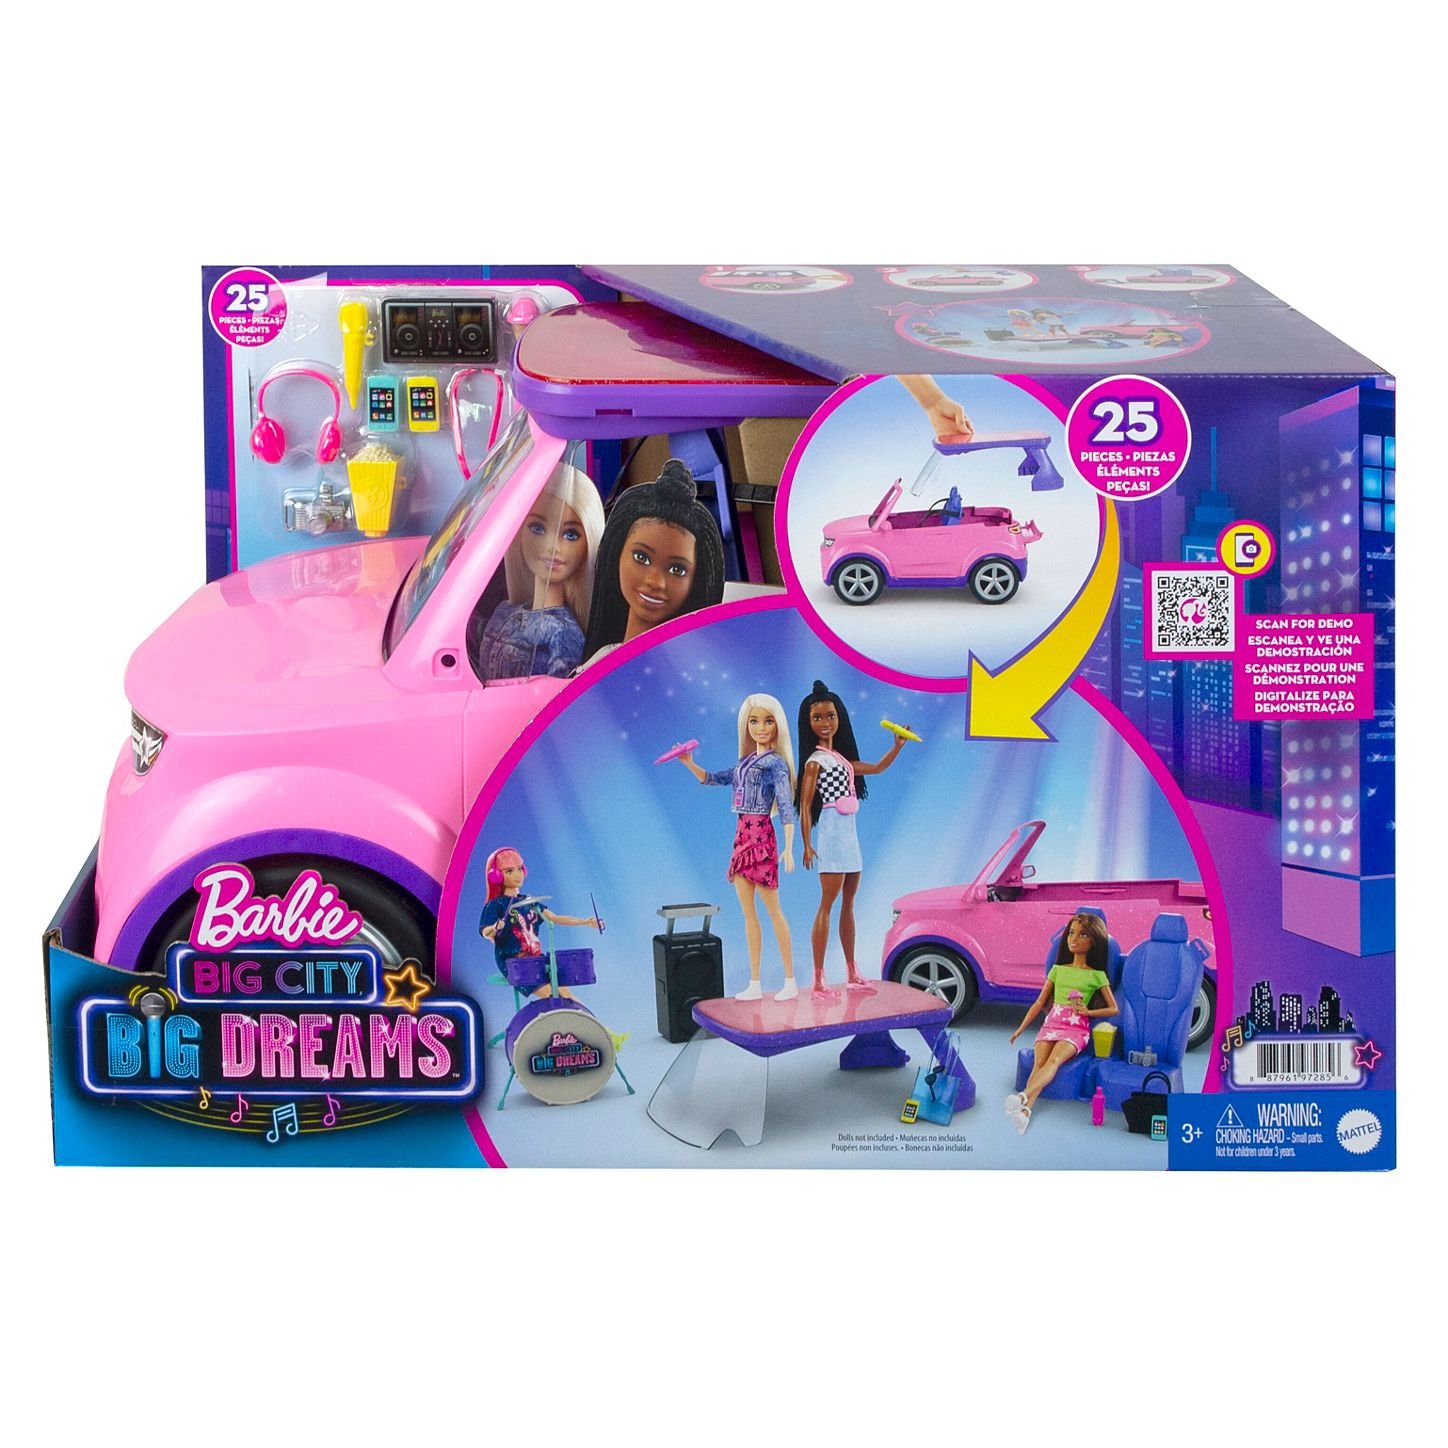 Carros da Barbie; relembre os modelos já pilotados pela boneca